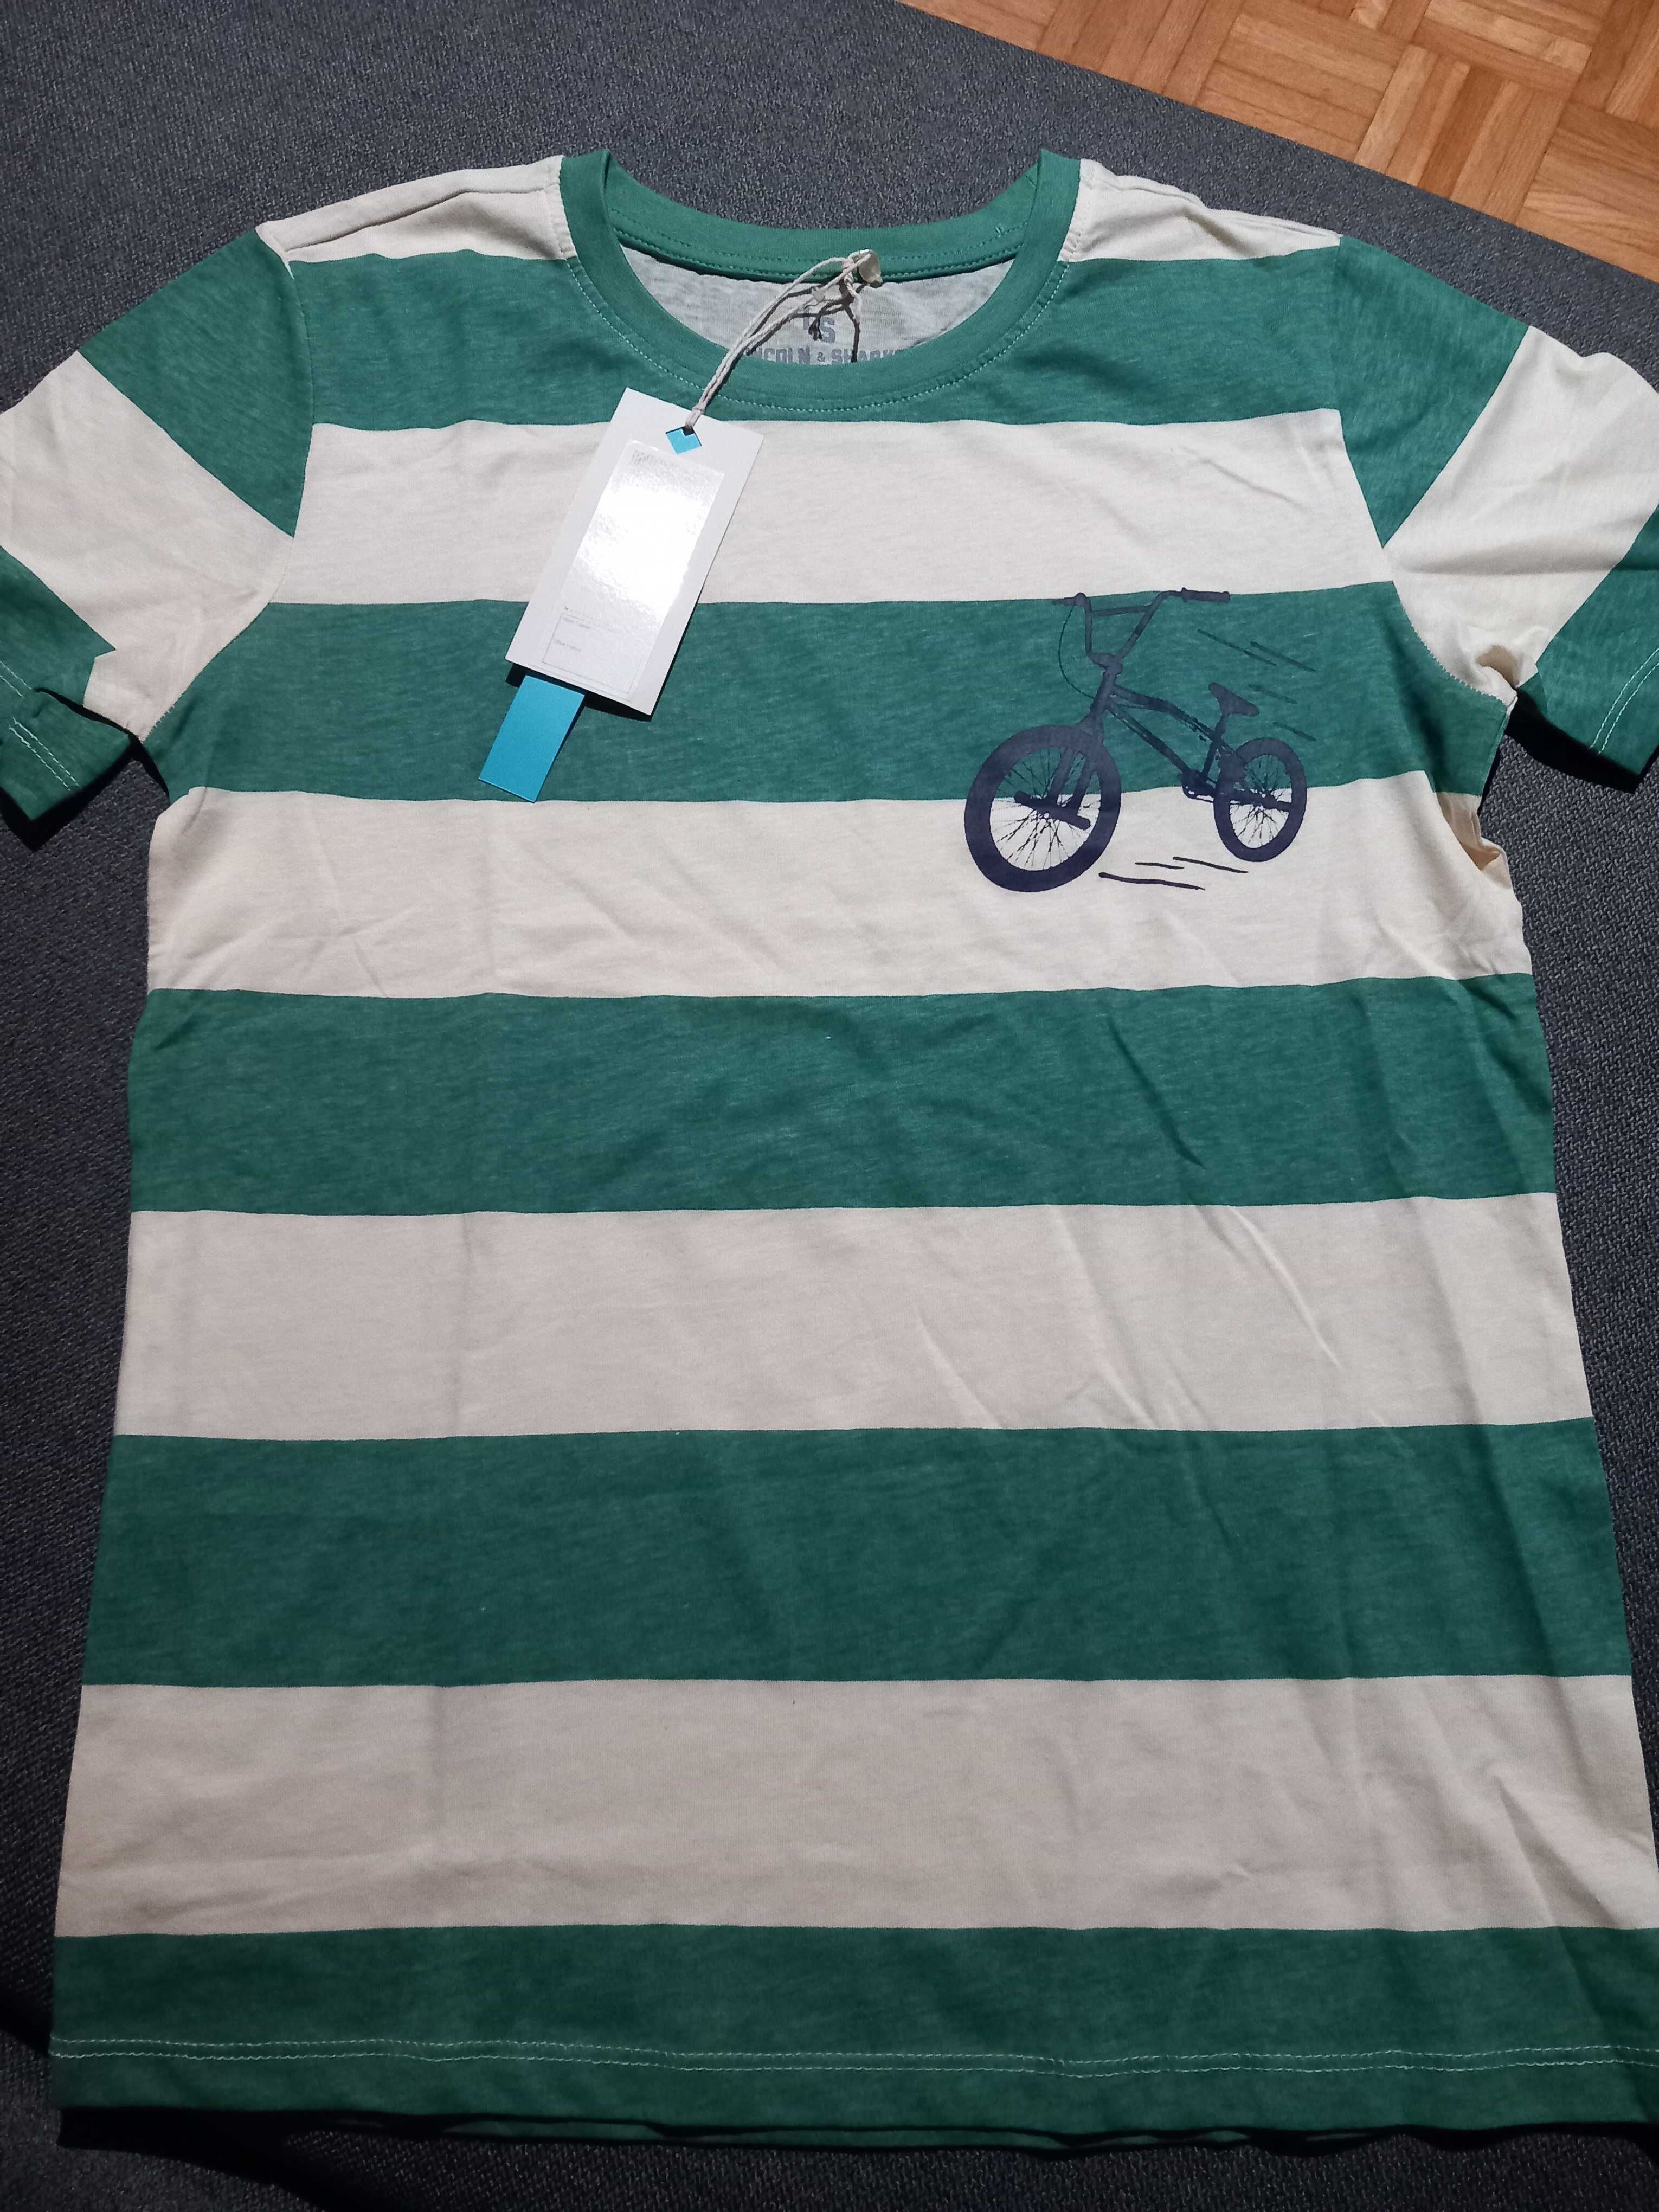 Koszulka krótki rękaw rozm 158 zielona kremowa rower Lincoln&Sharks